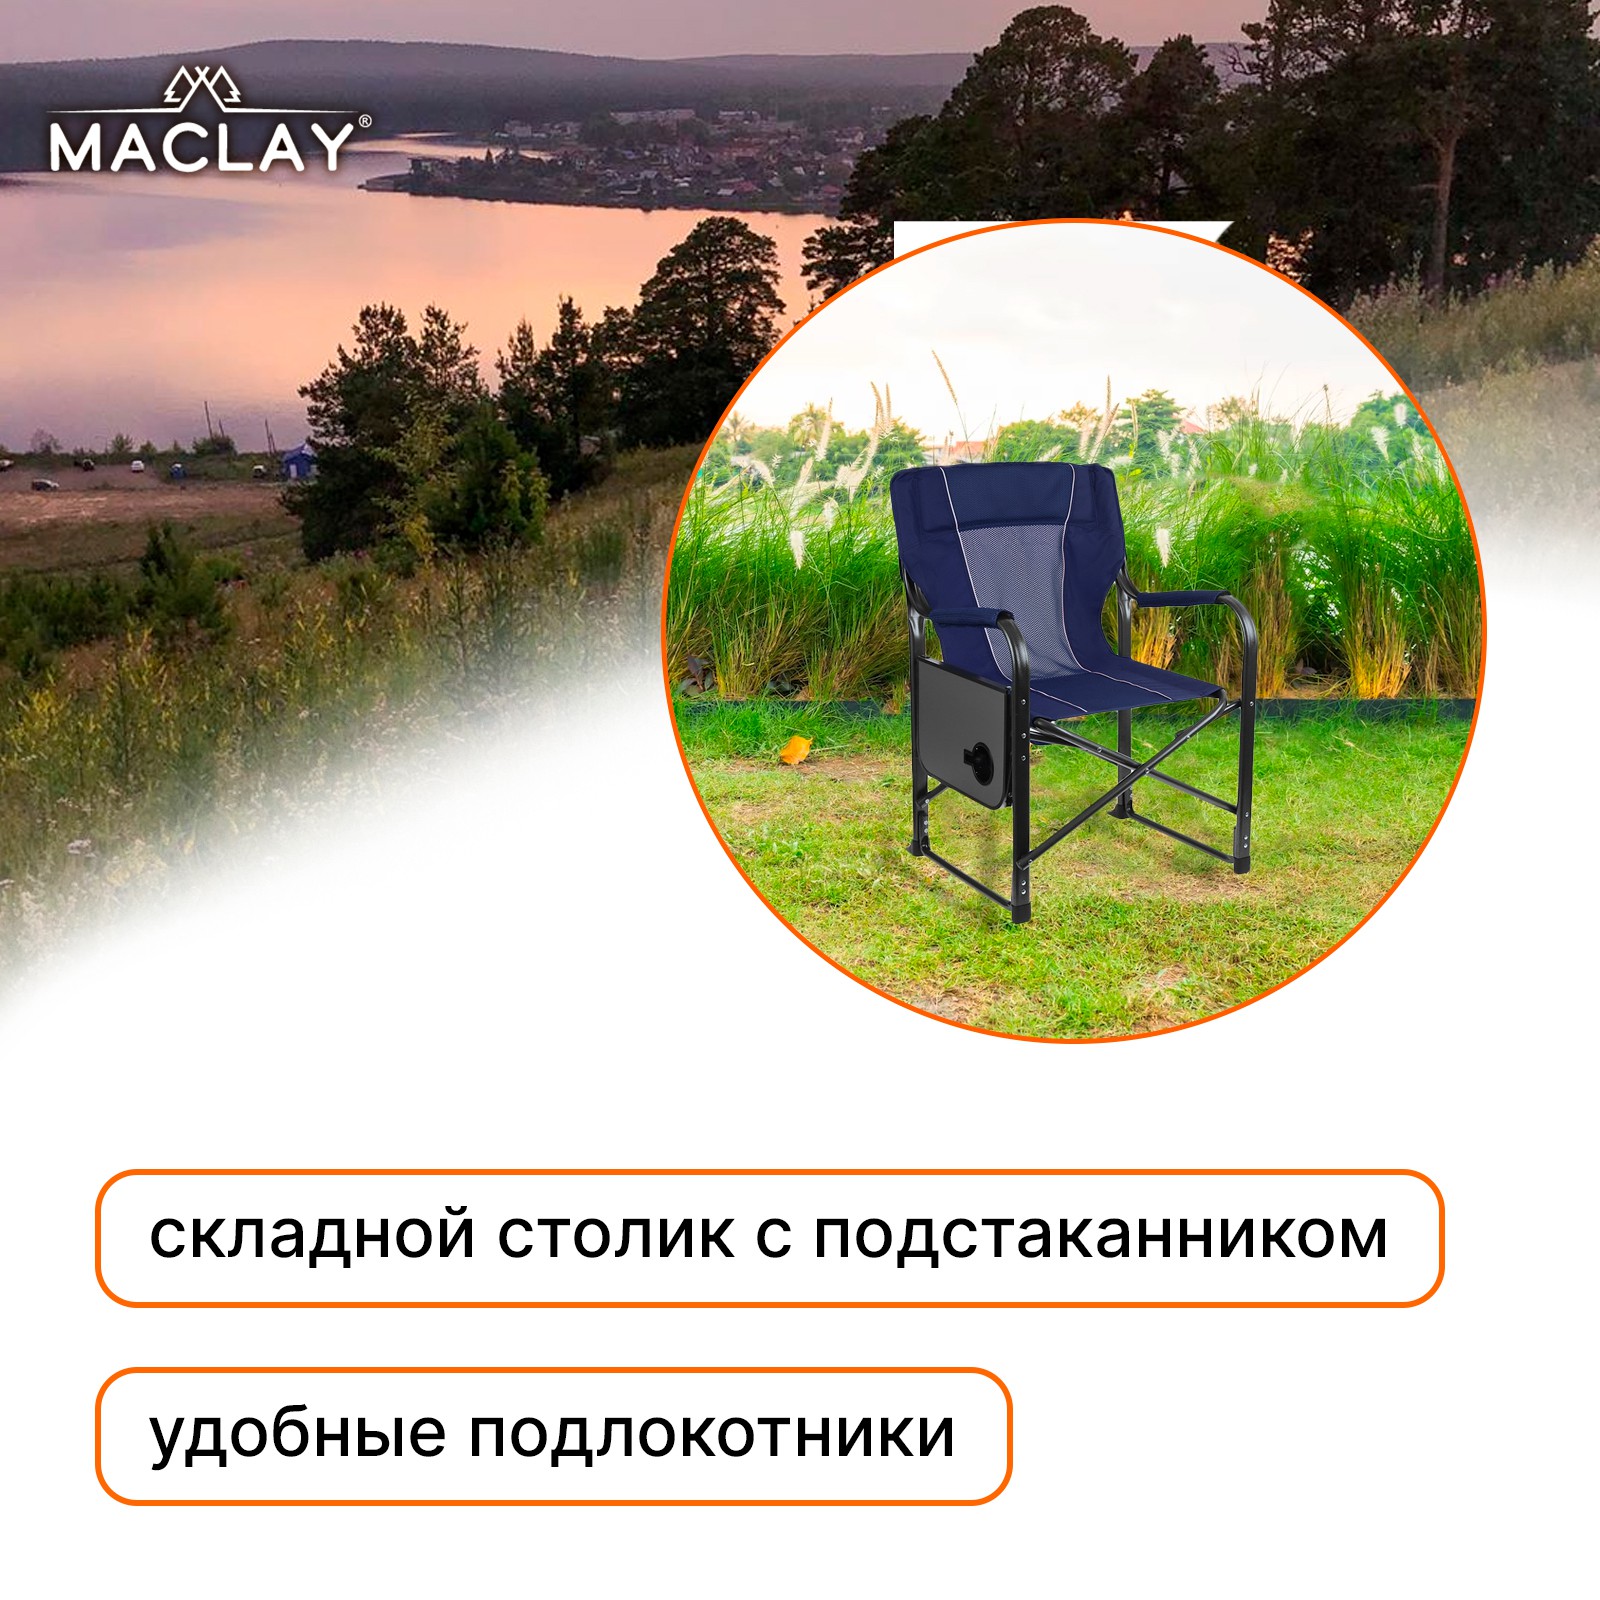 Кресло Maclay туристическое стол с подстаканником р. 63 х 47 х 94 см цвет синий - фото 2